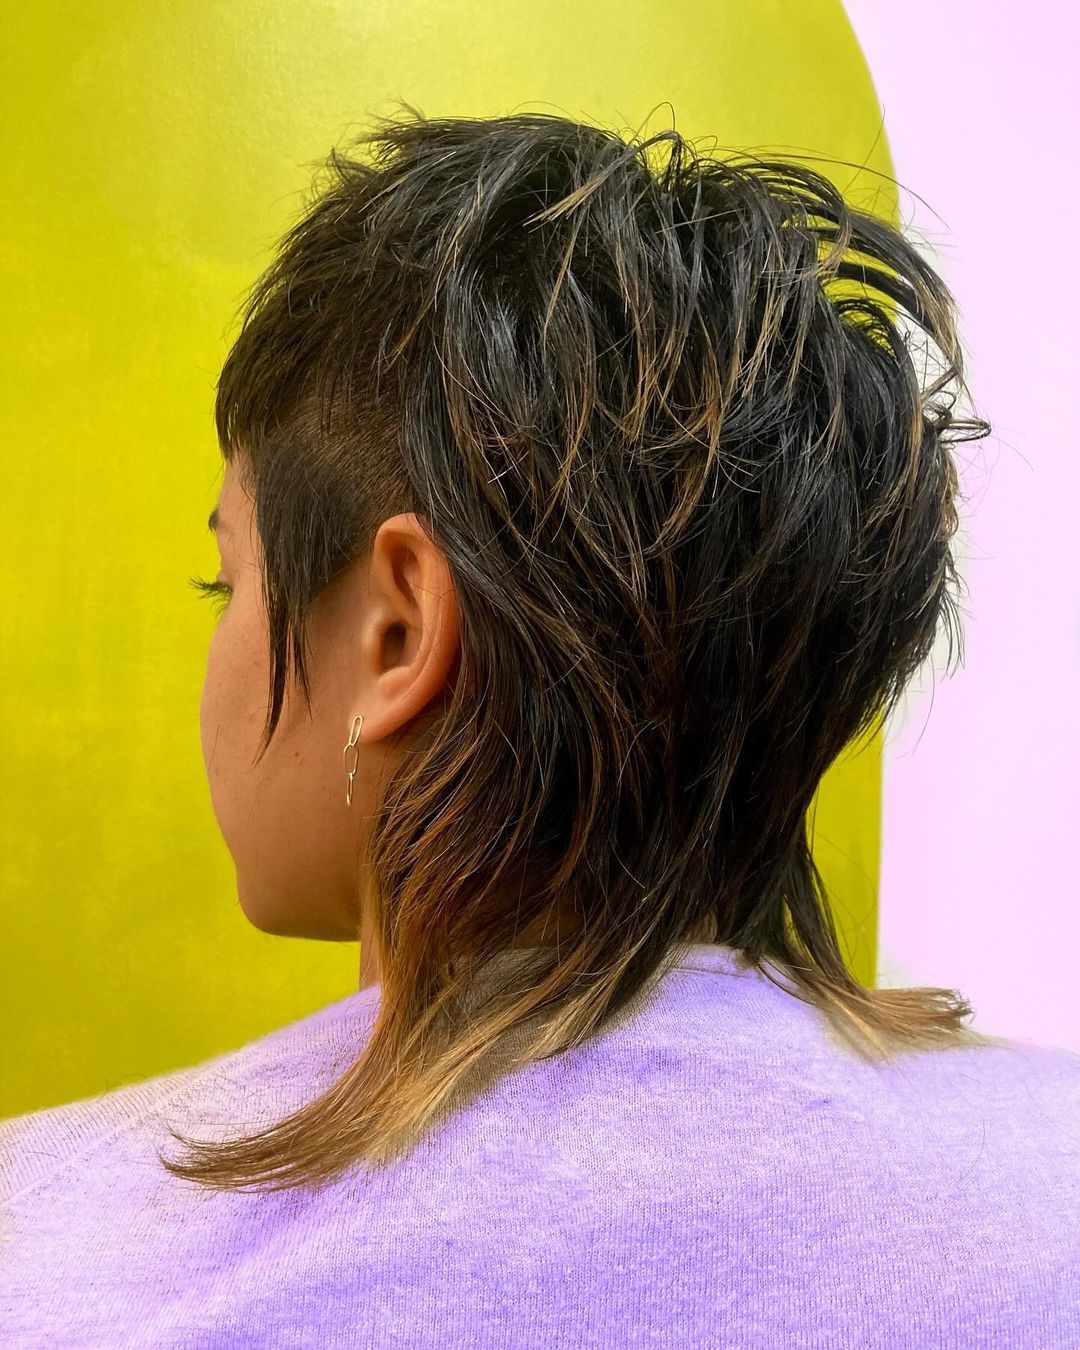 Антитрендові зачіски: які стрижки та фарбування зіпсують будь-який образ